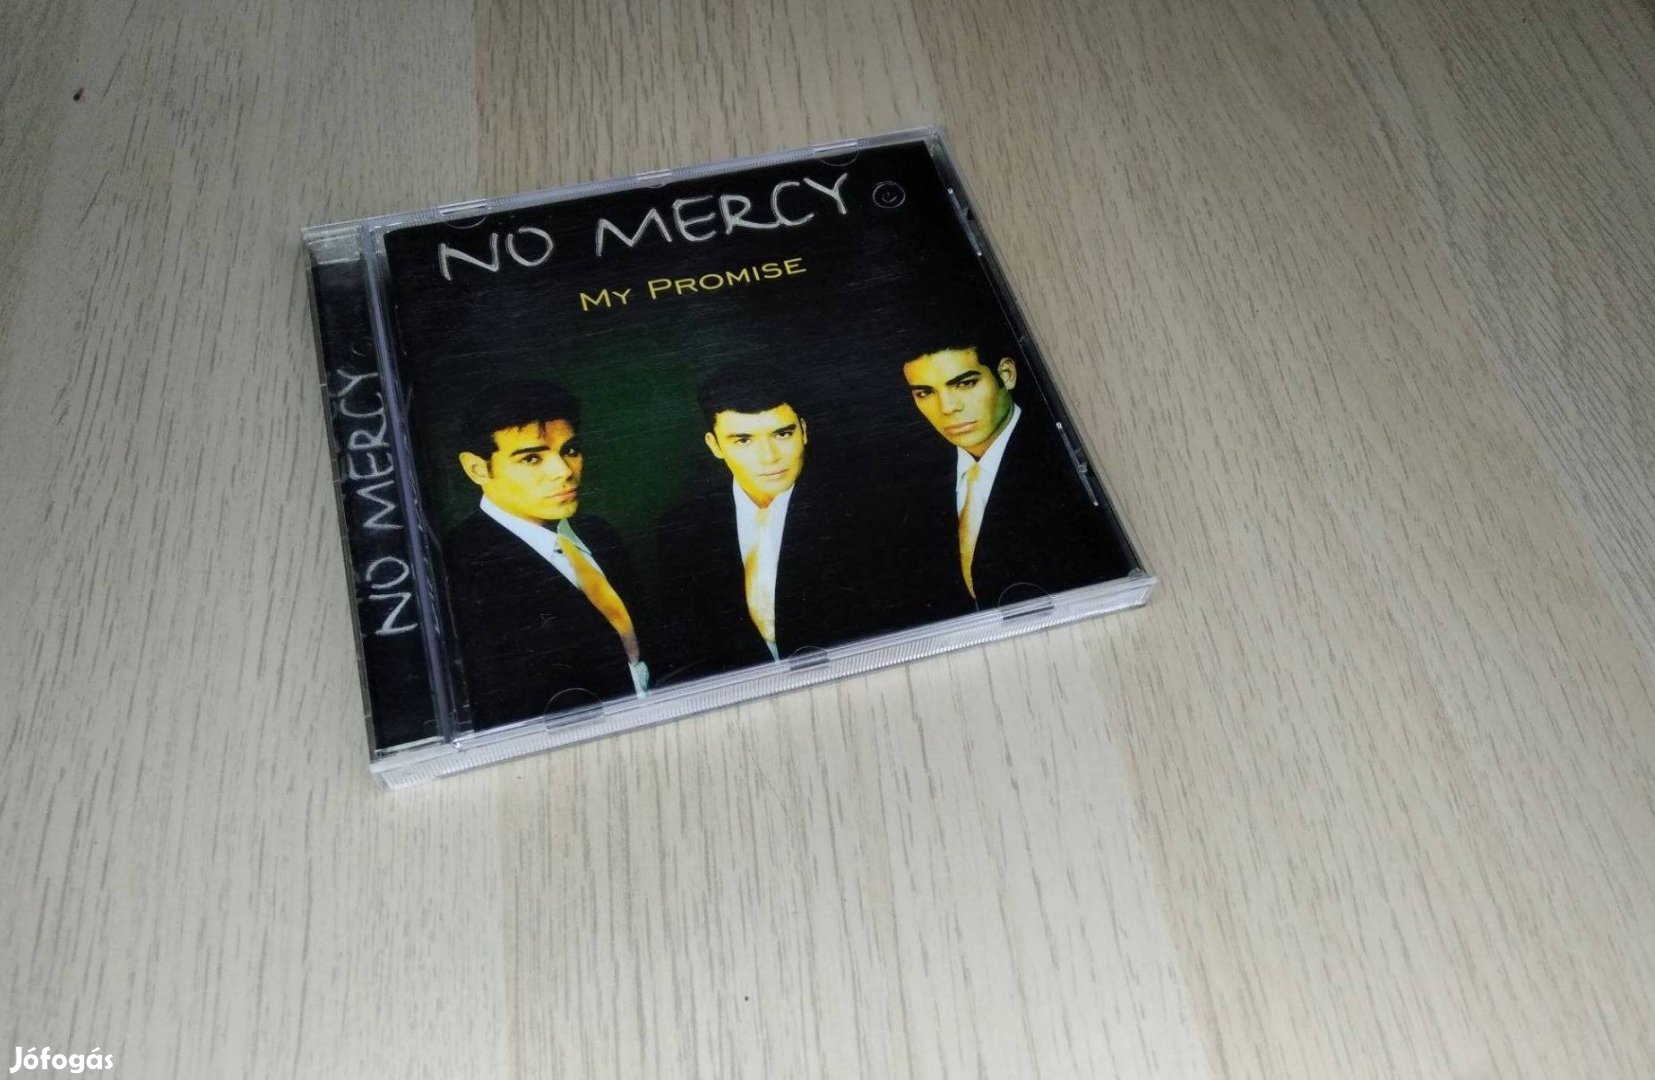 No Mercy - My Promise / CD 1996